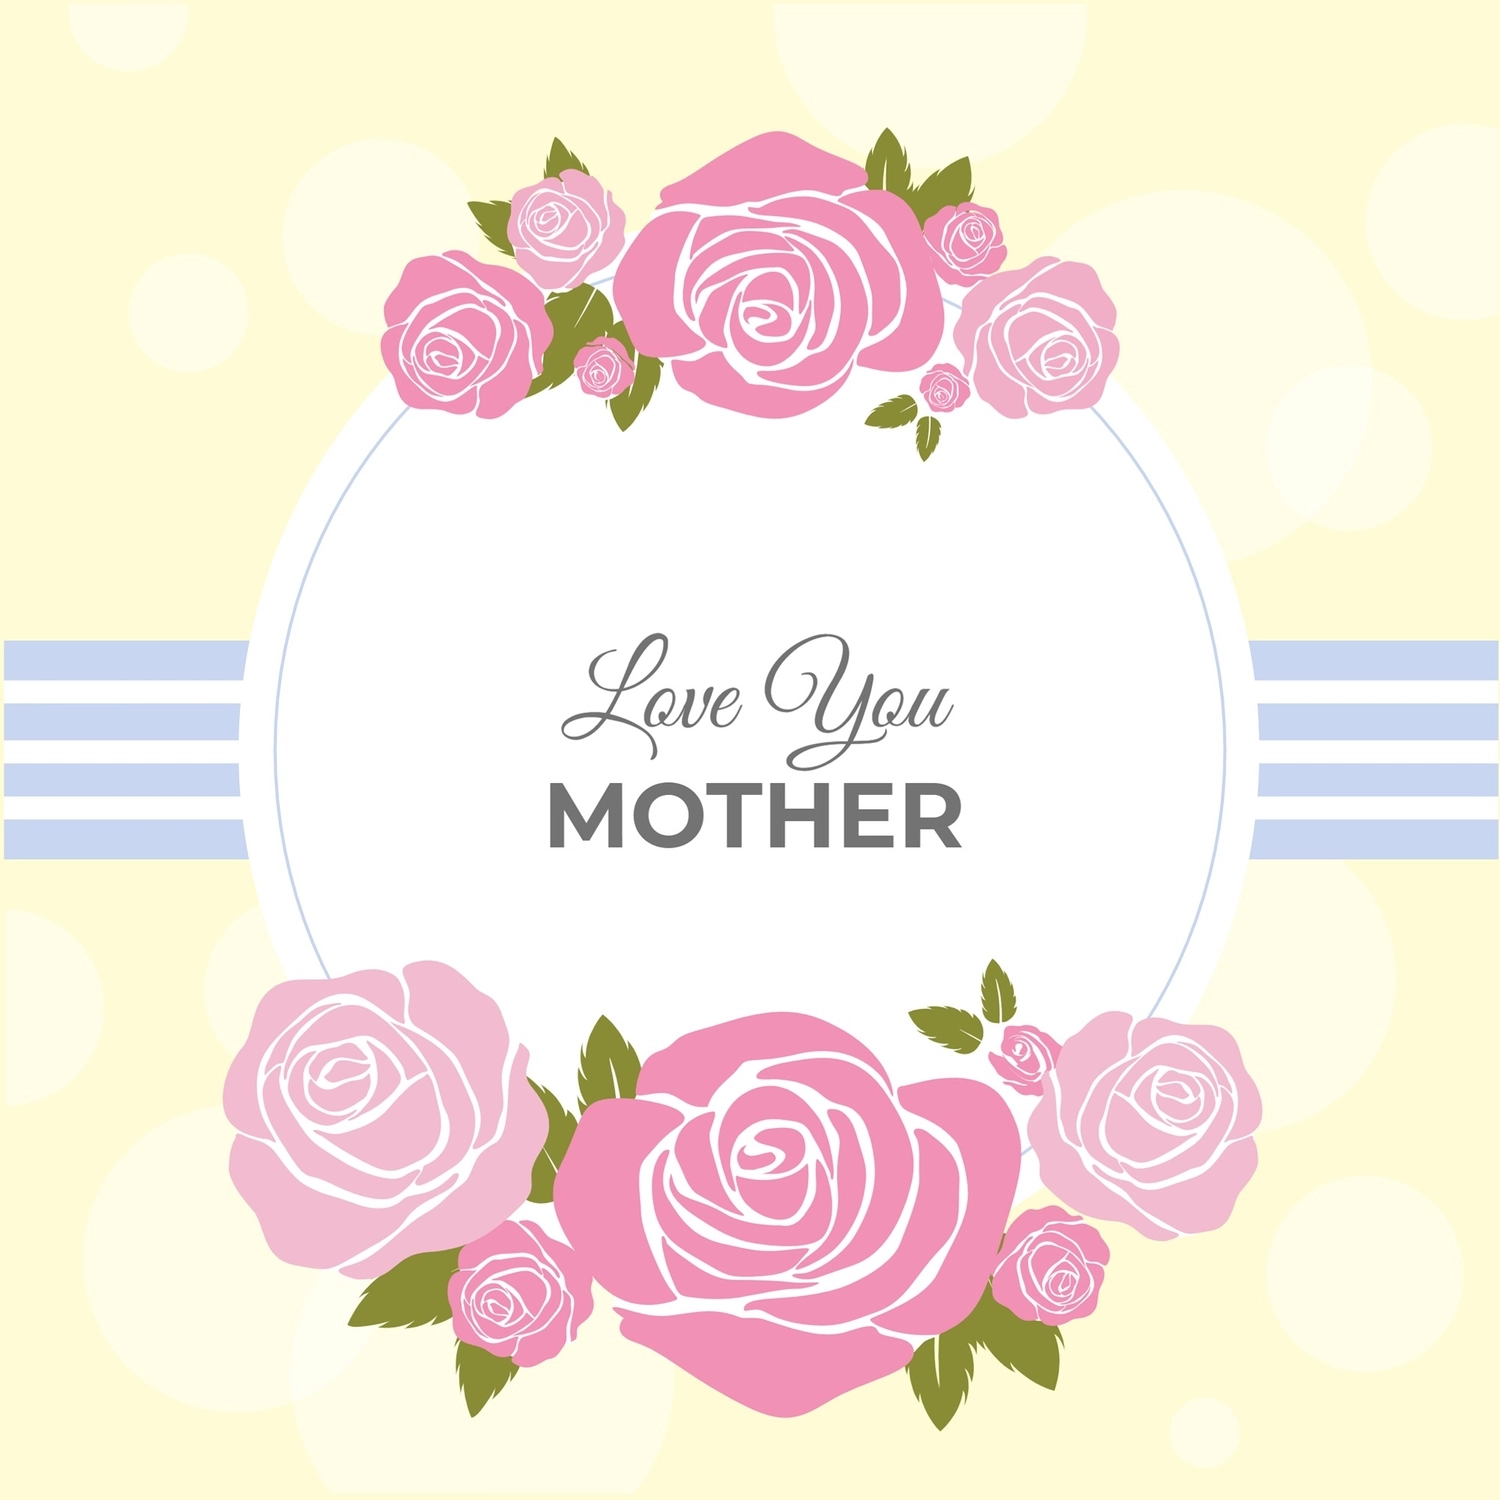 母の日グリーティングカード　バラの花, 핑크 백, 만들기, 디자인, 메시지 카드 템플릿